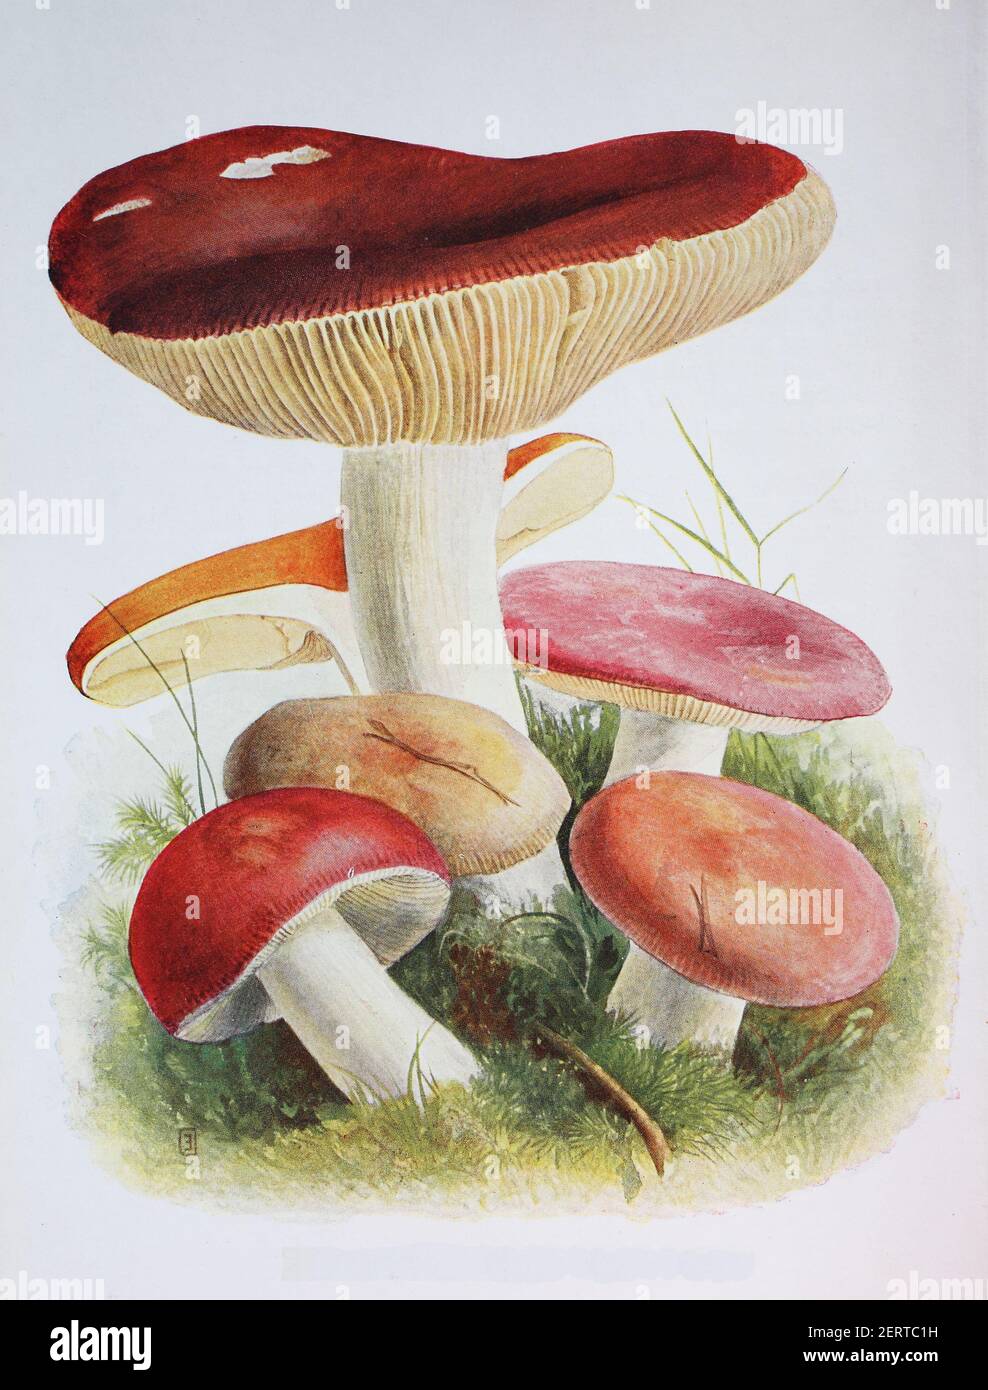 Russula albidula est une espèce de champignons du genre Russula, reproduction numérique d'une ilustration d'Emil Doerstling (1859-1940) Banque D'Images